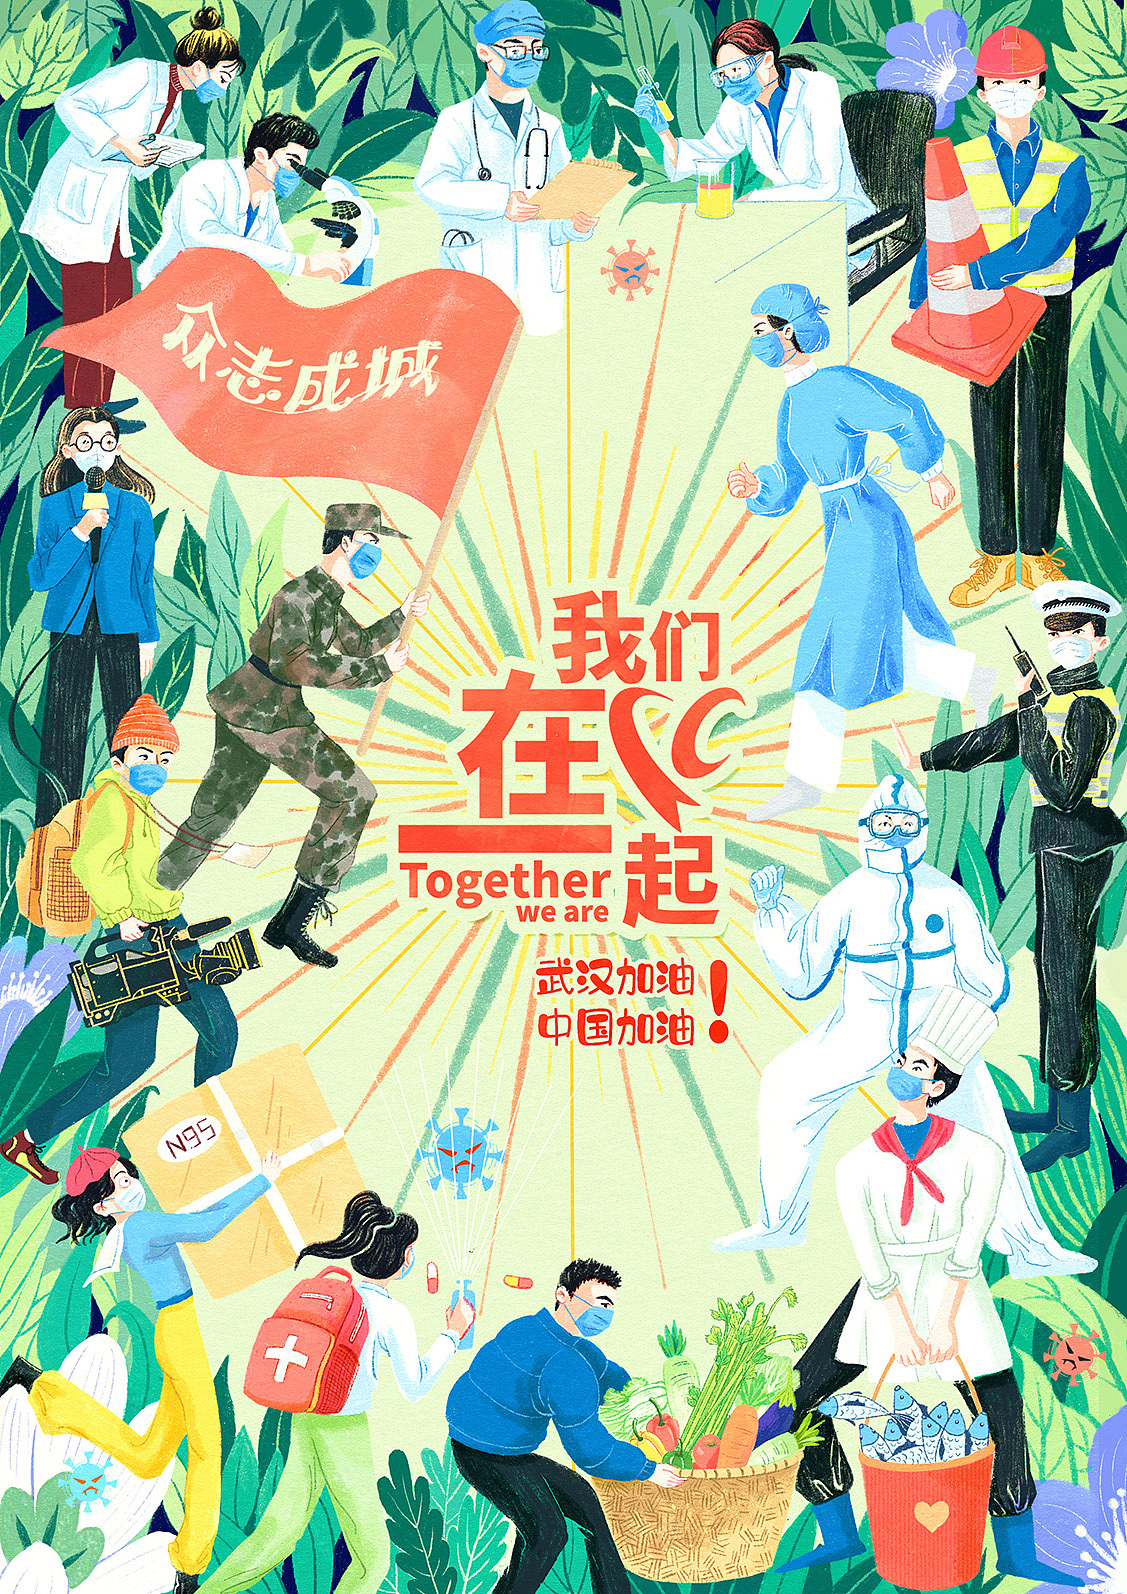 疫情严重时期投稿的公益海报，后来被用在深圳卫视播出的公益短片上。